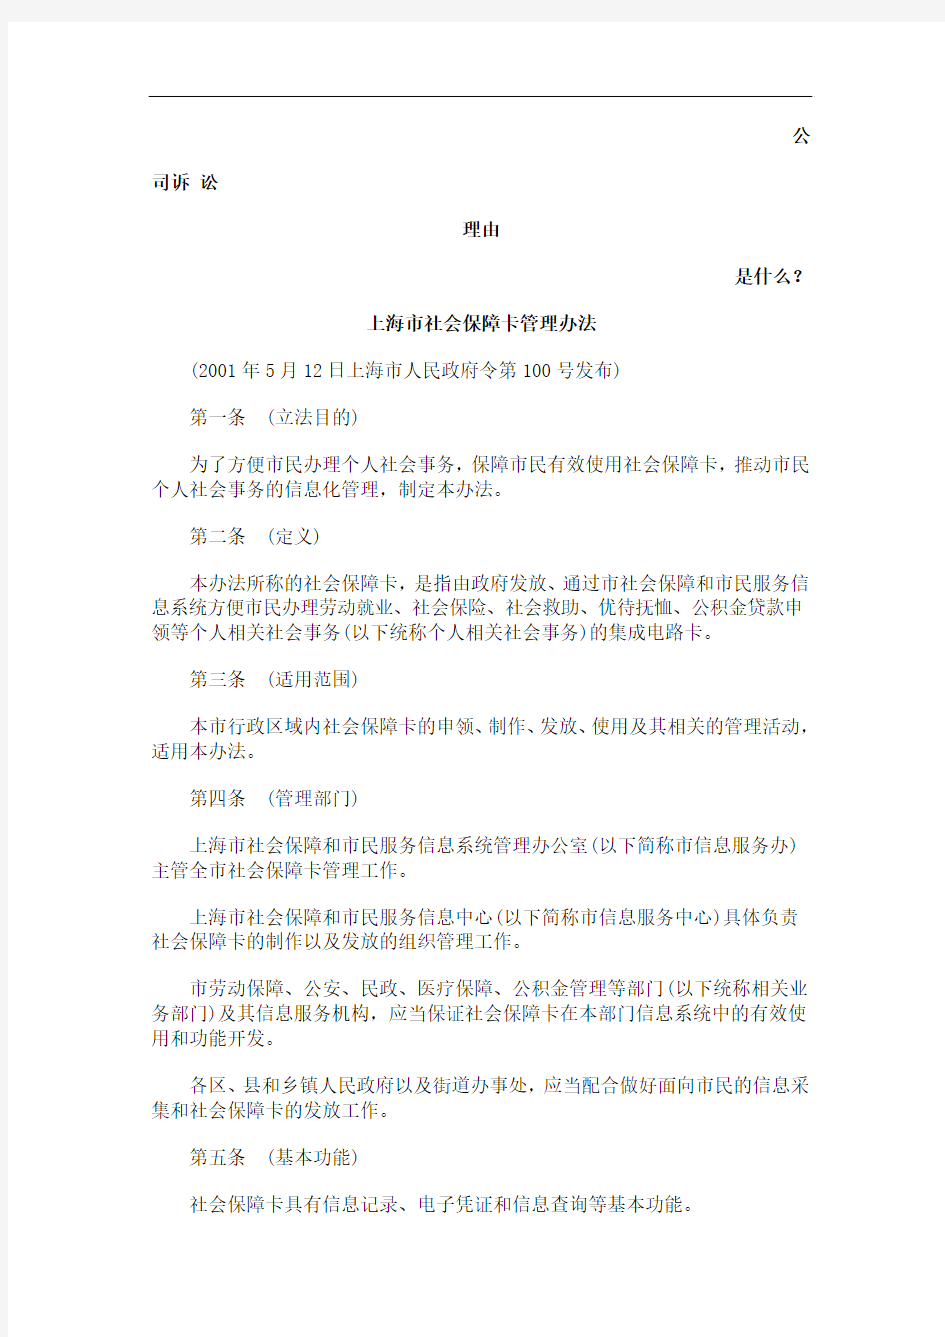 上海市社会保障卡管理办法发展与协调